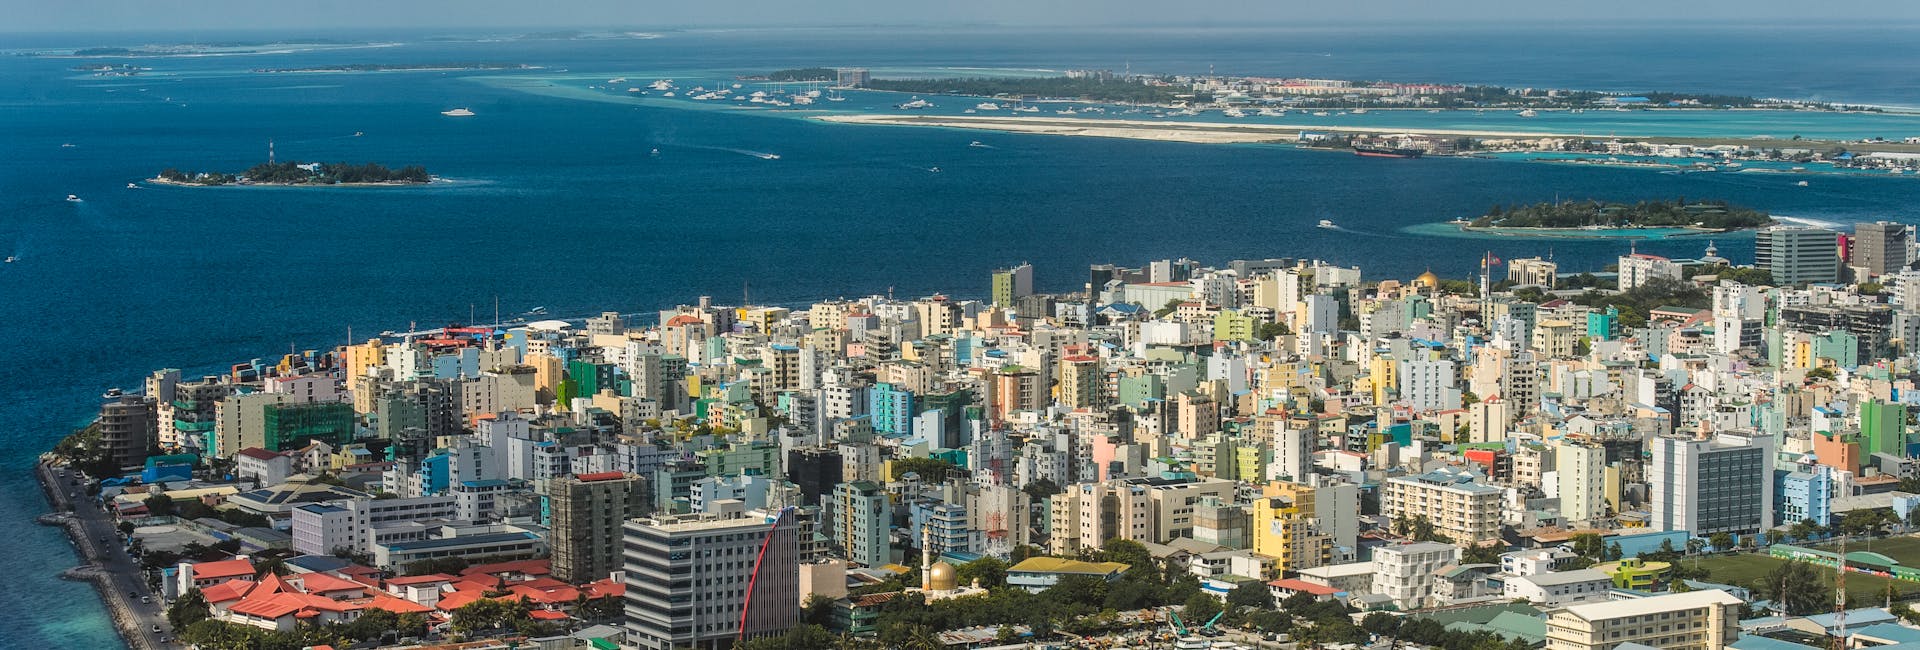 Malediivien pääkaupunki Male